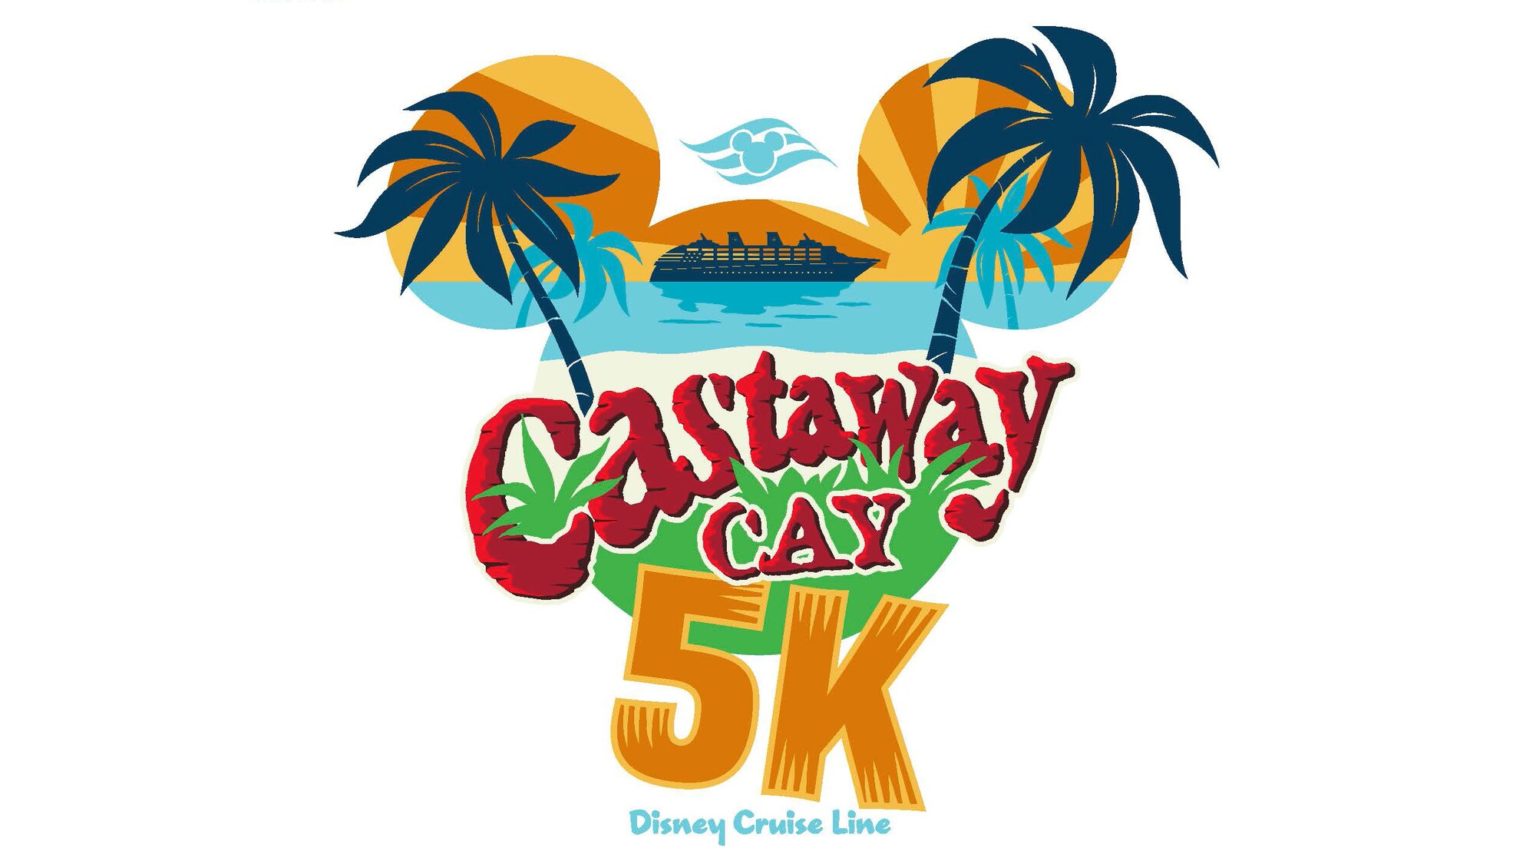 Paquete de Entrada de Castaway Cay 5k y Paquete Premium Disponible para